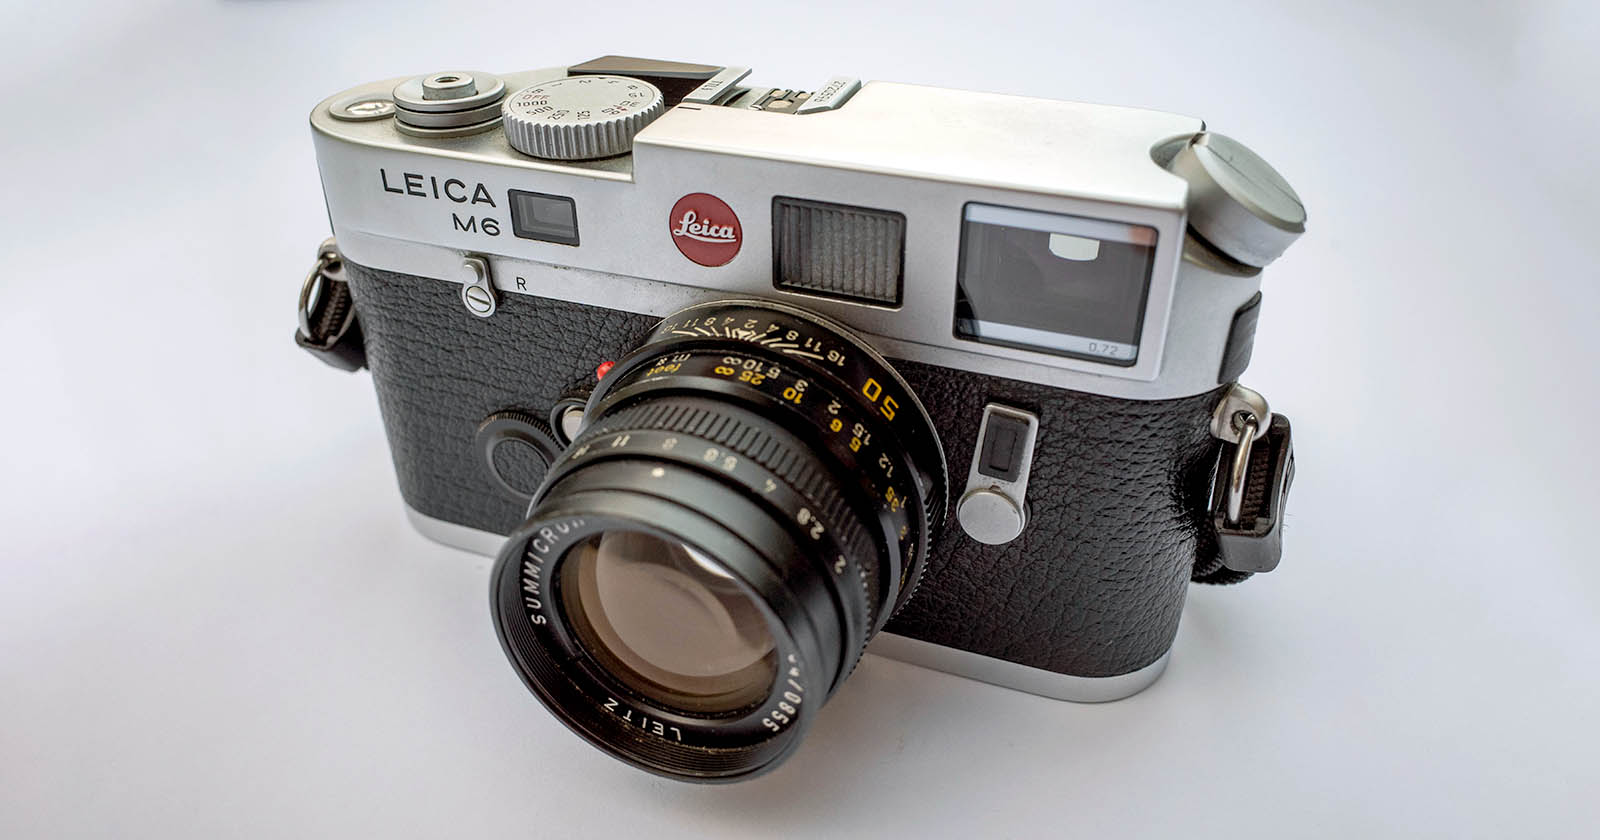 Leica M6 Tum Zamanlarin En Iyi 35mm Film Kameralarindan Biri header